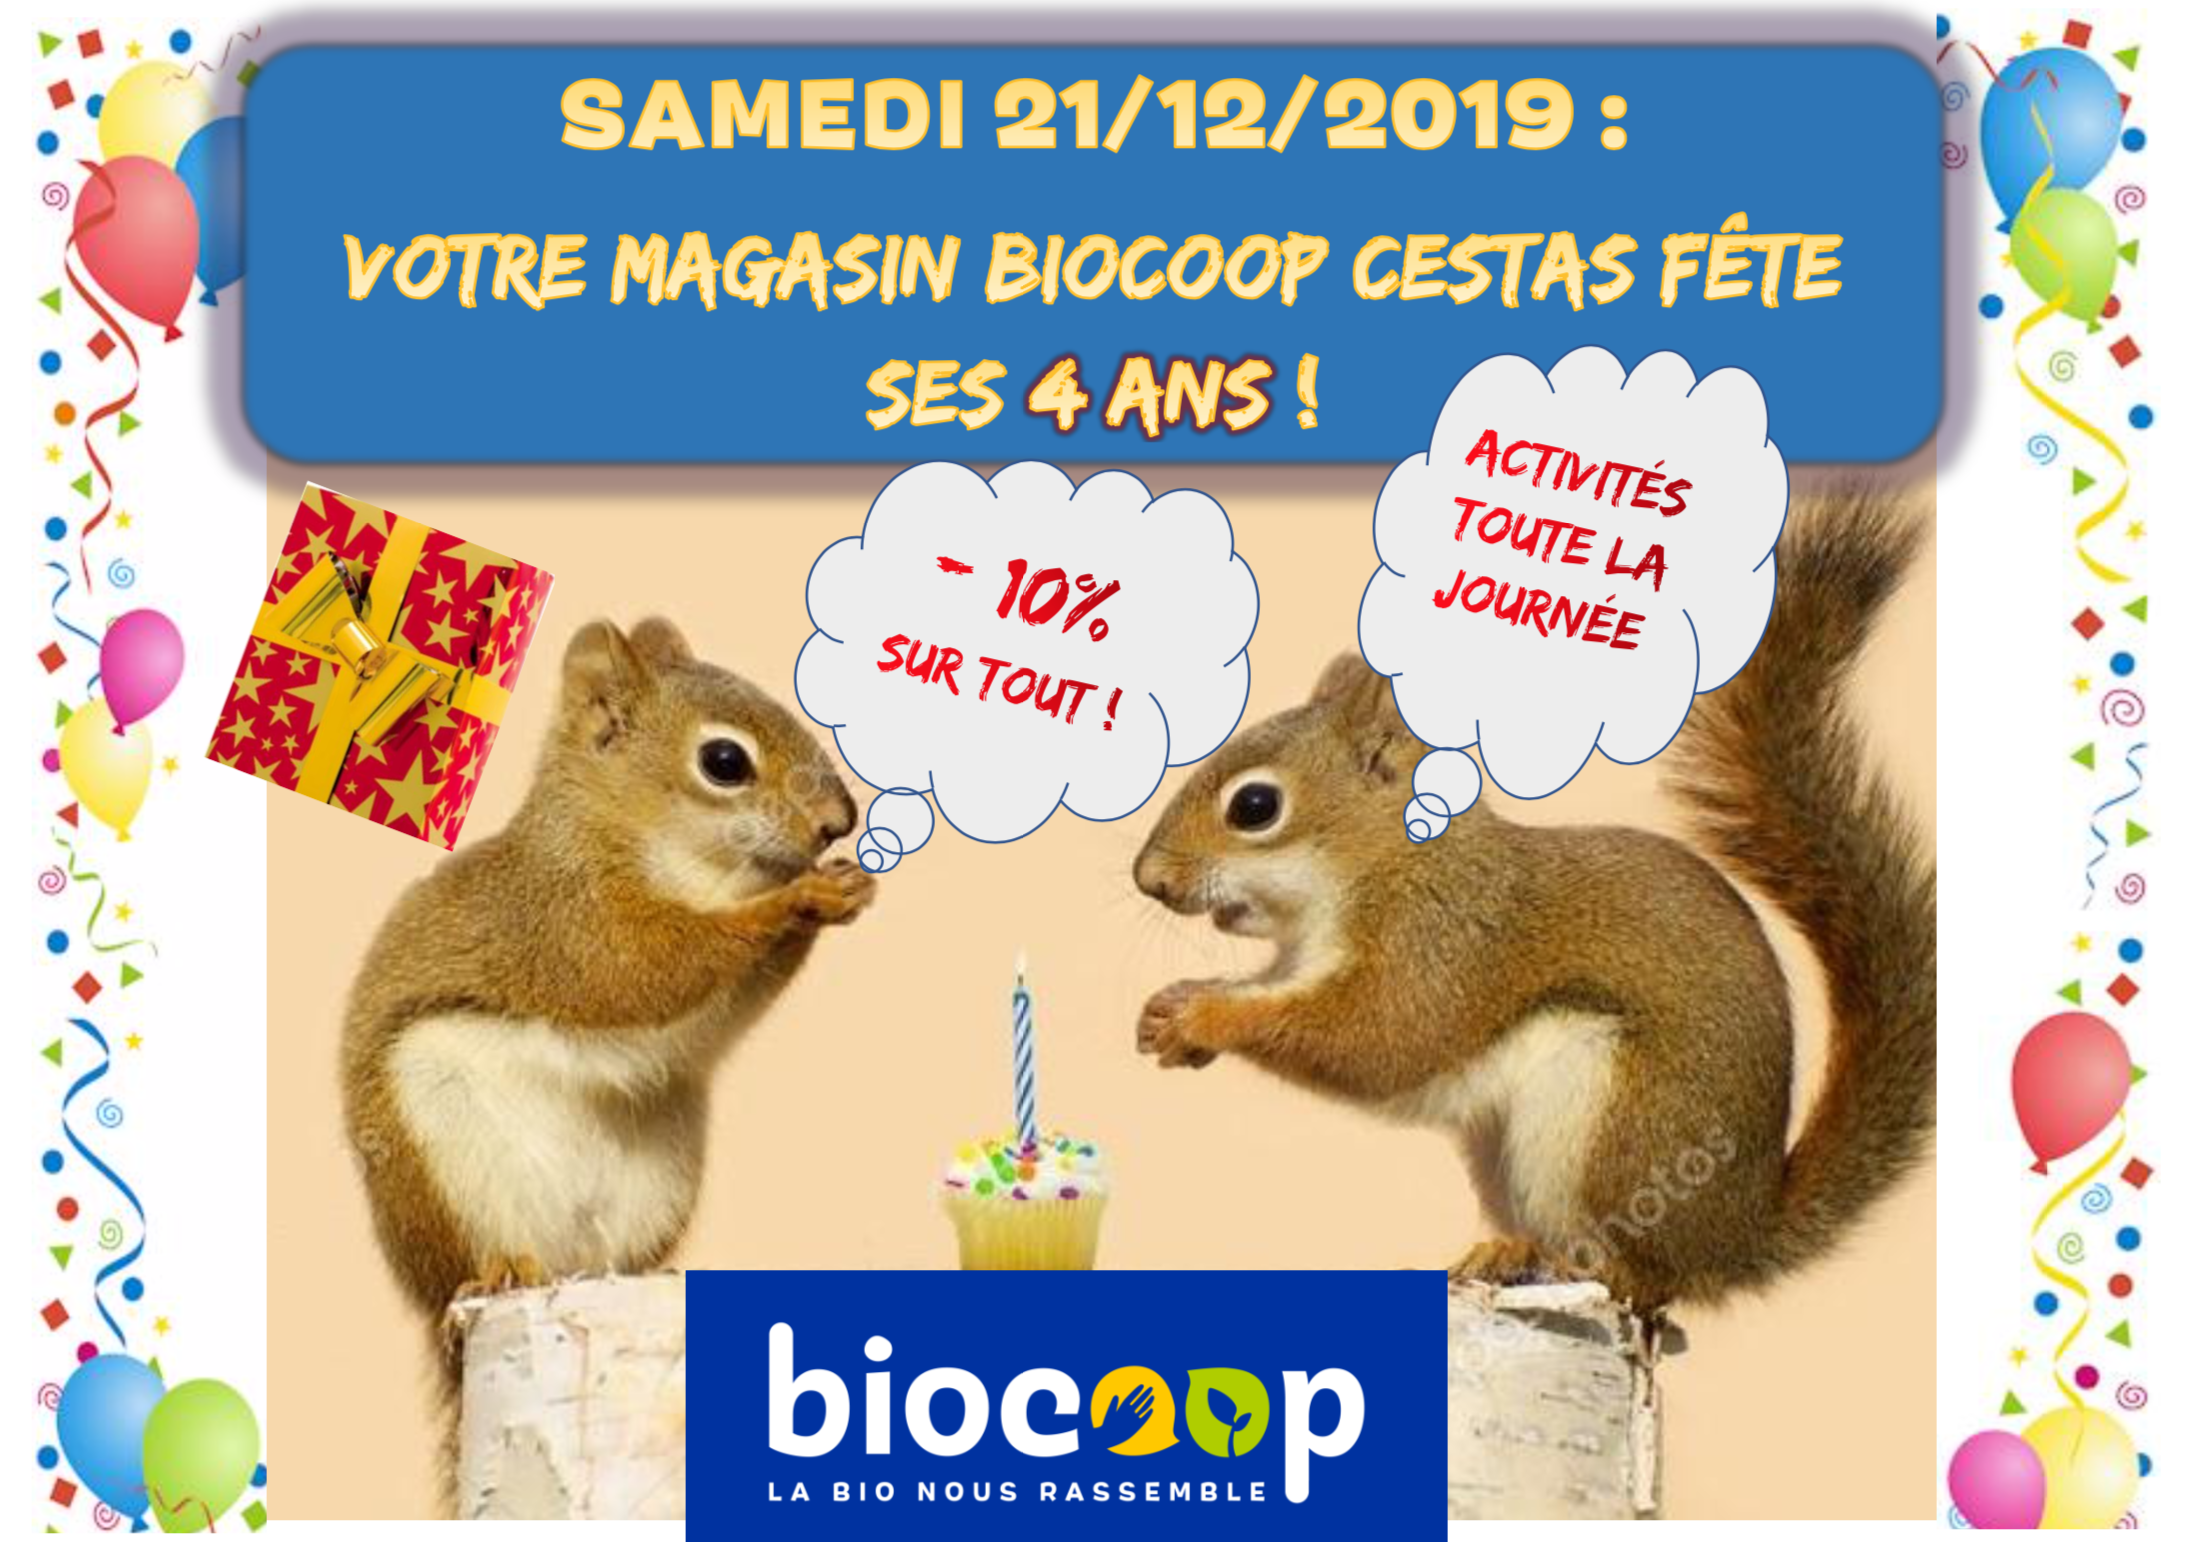 Votre magasin Biocoop Cestas fête ses 4 ans samedi 21 décembre ! 